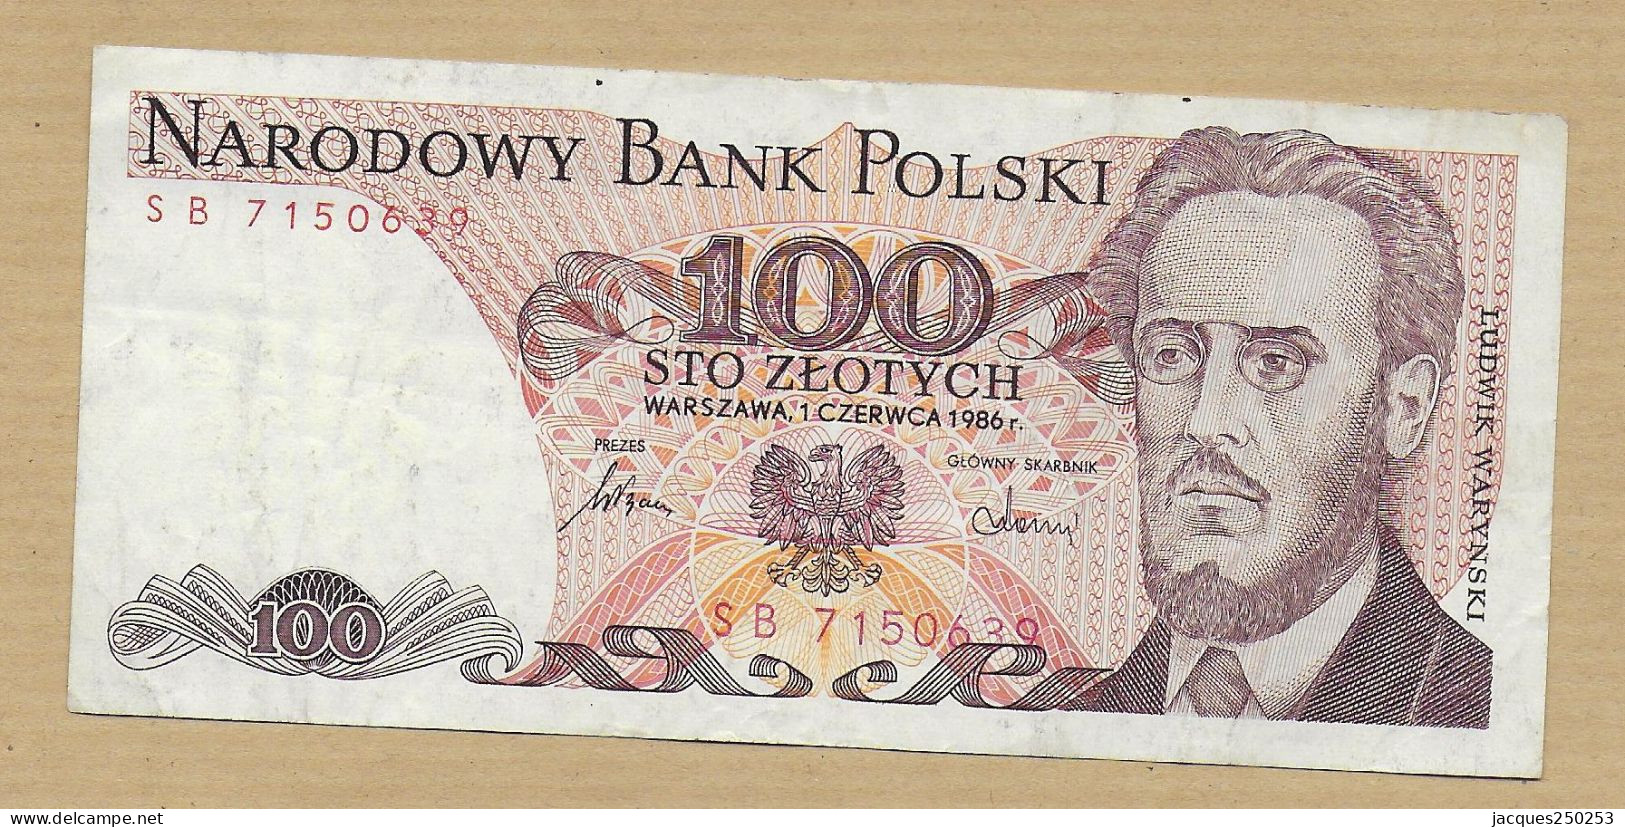 100 ZLOTYCH 1986 - Poland